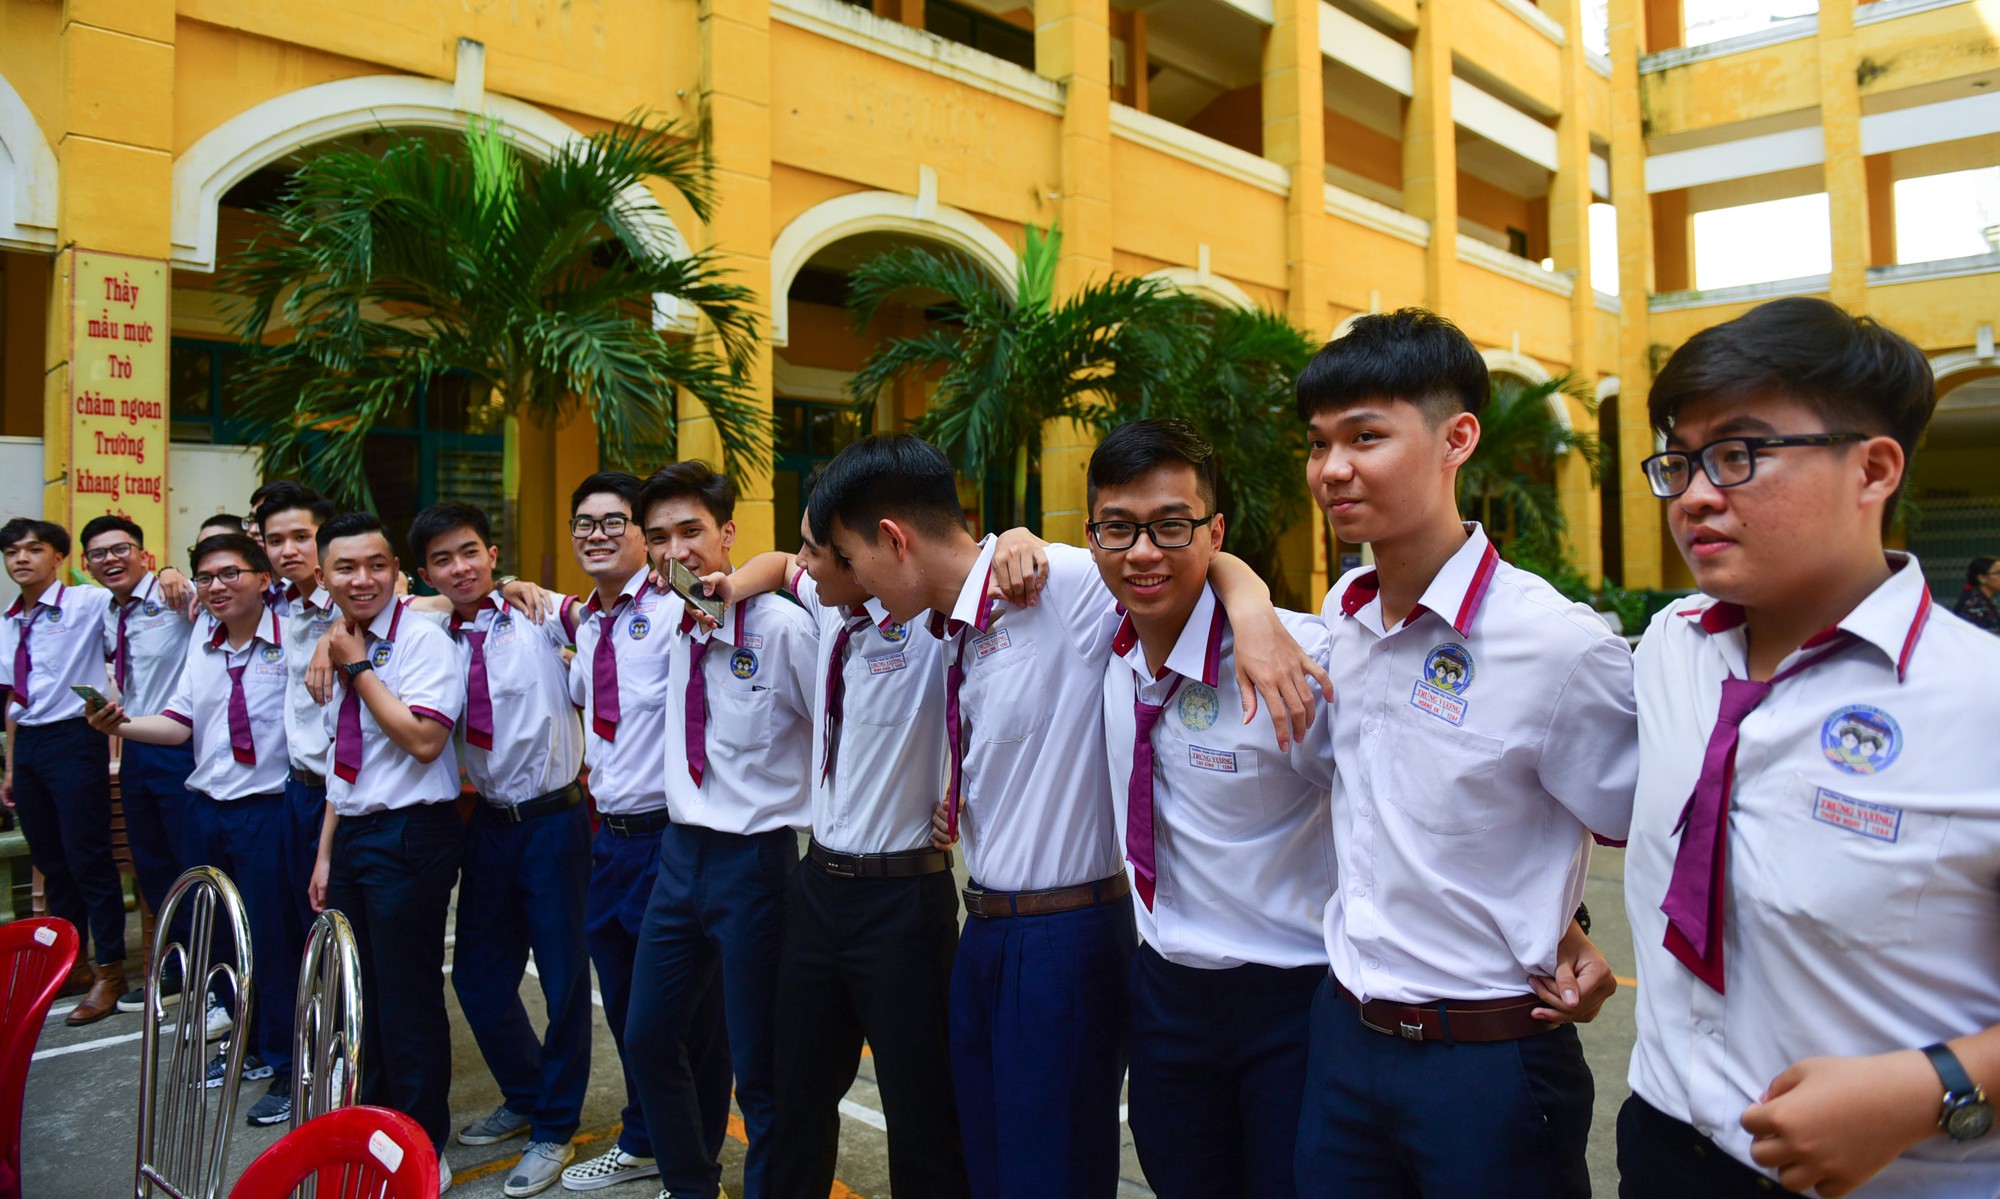 Nước mắt, nụ cười tràn ngập trong lễ trưởng thành của học sinh Sài Gòn - Ảnh 8.